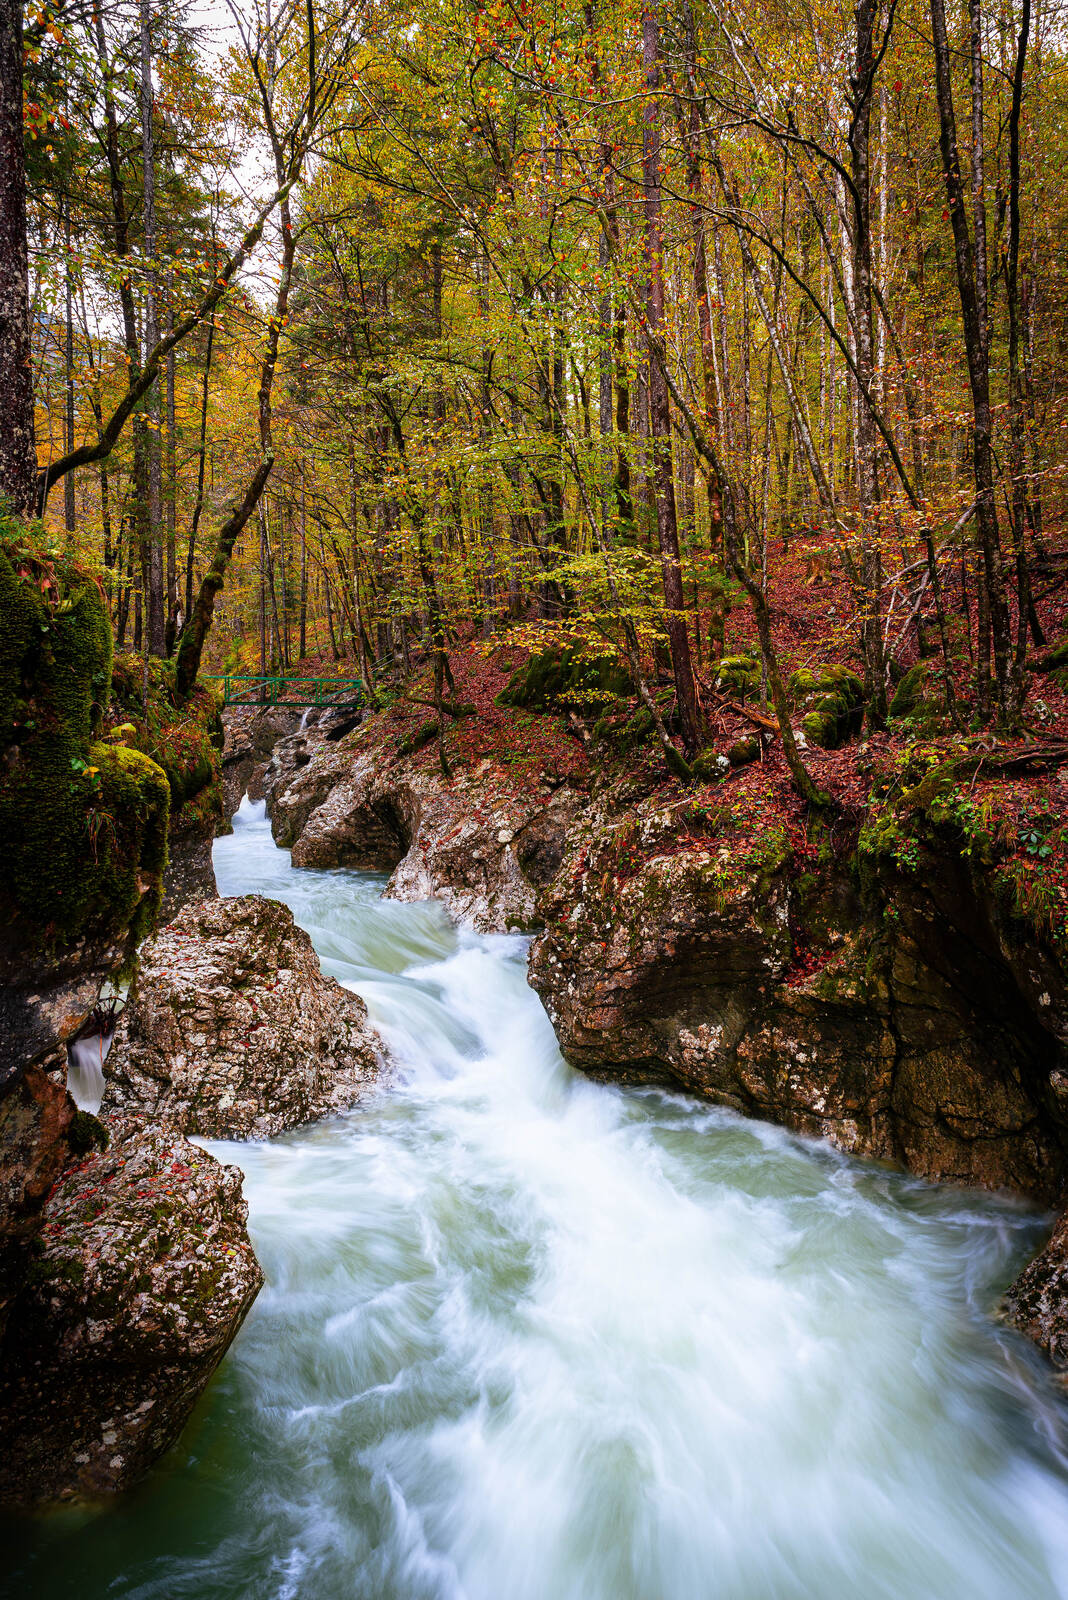 Image of Mostnica River by Nejc Žorž